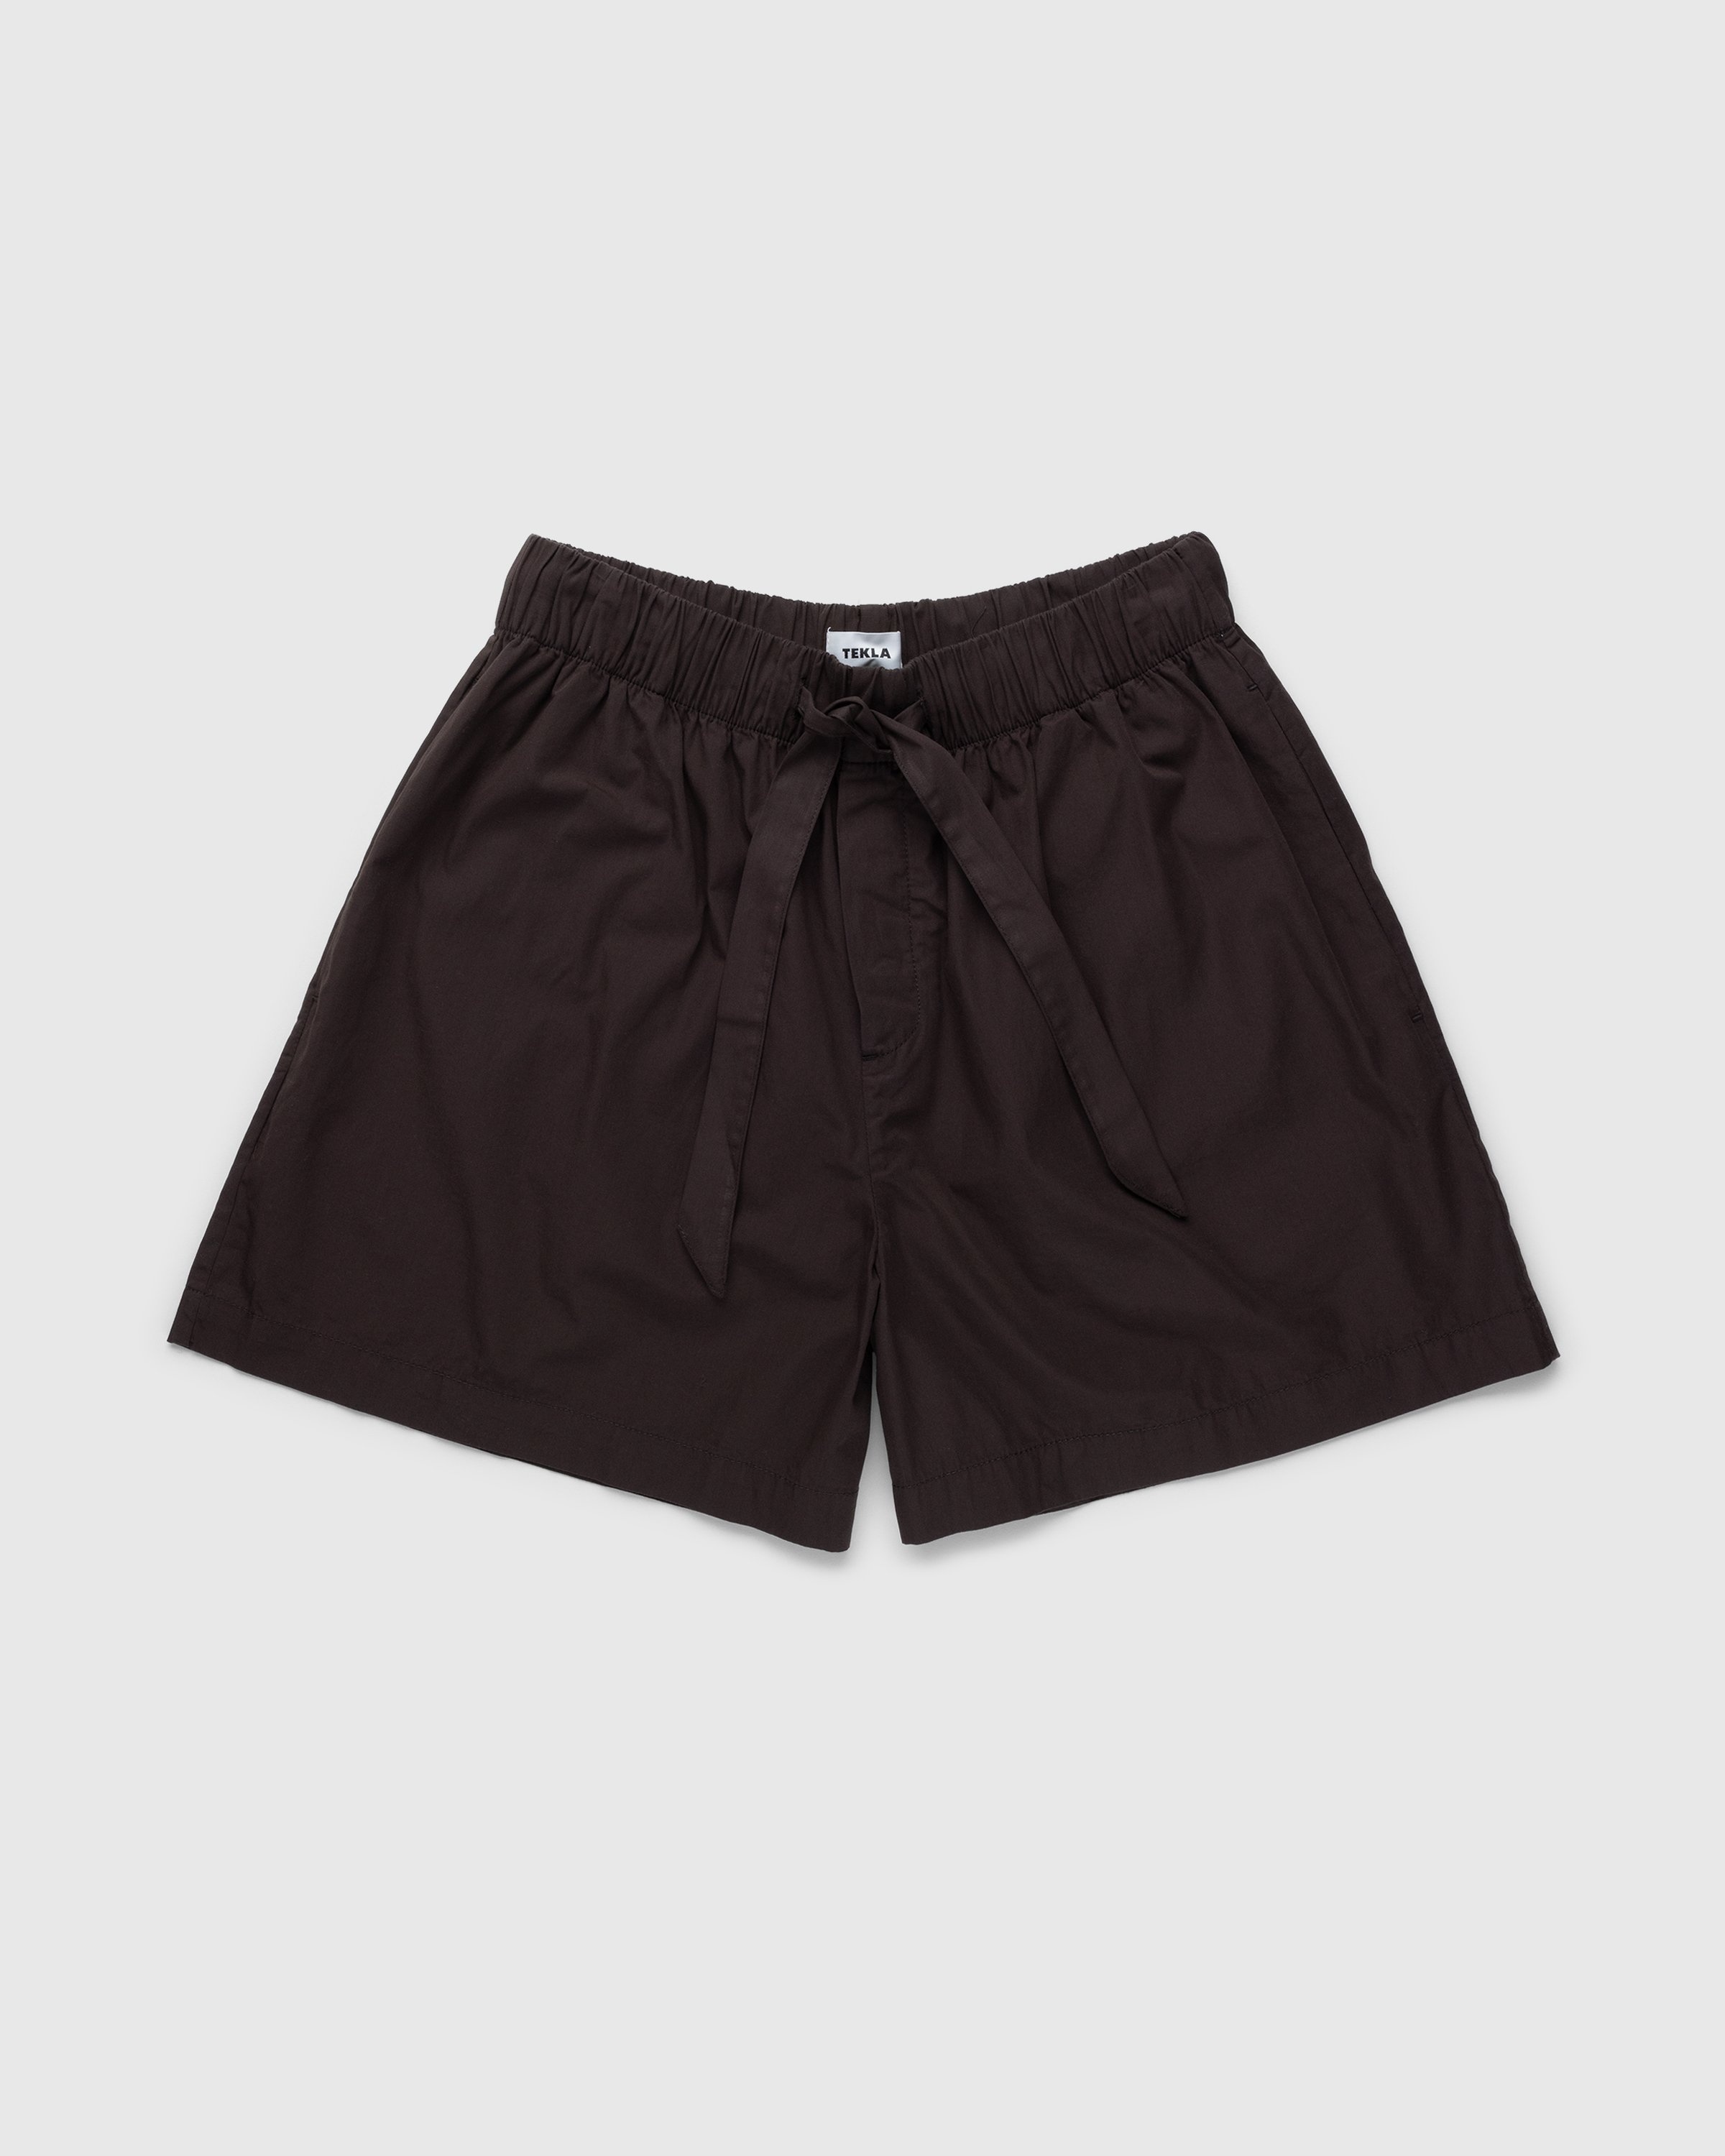 Tekla – Cotton Poplin Pyjamas Shorts Coffee - Pyjamas - Brown - Image 1